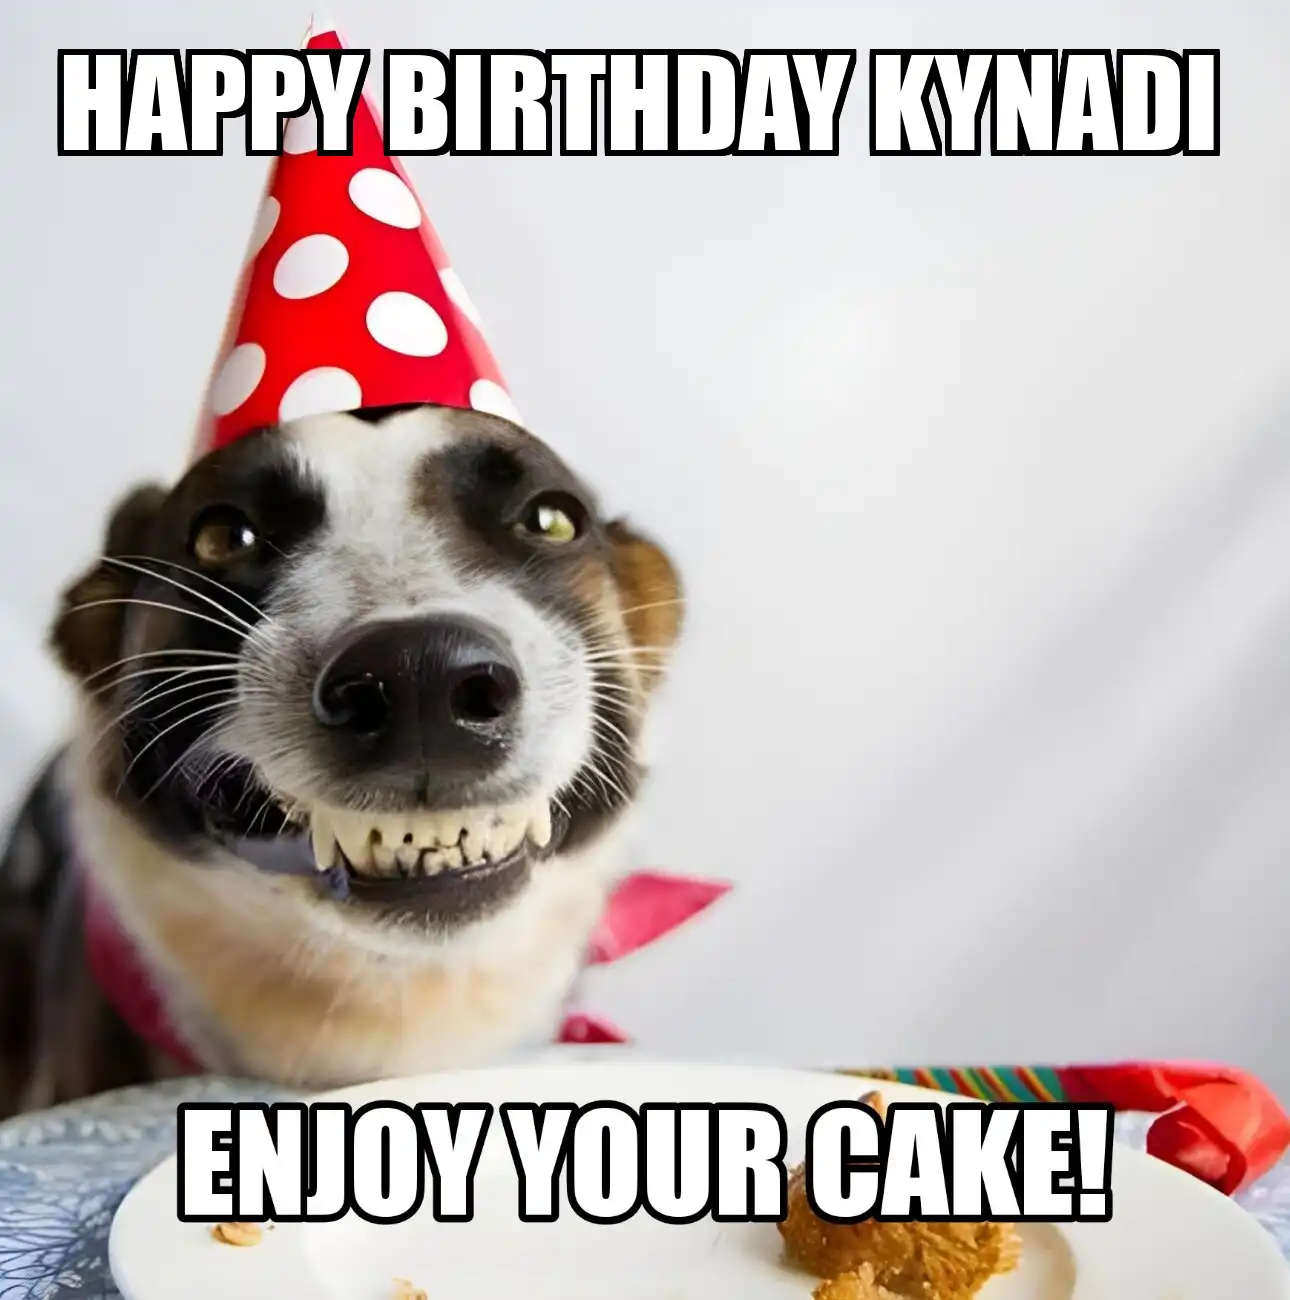 Happy Birthday Kynadi Enjoy Your Cake Dog Meme